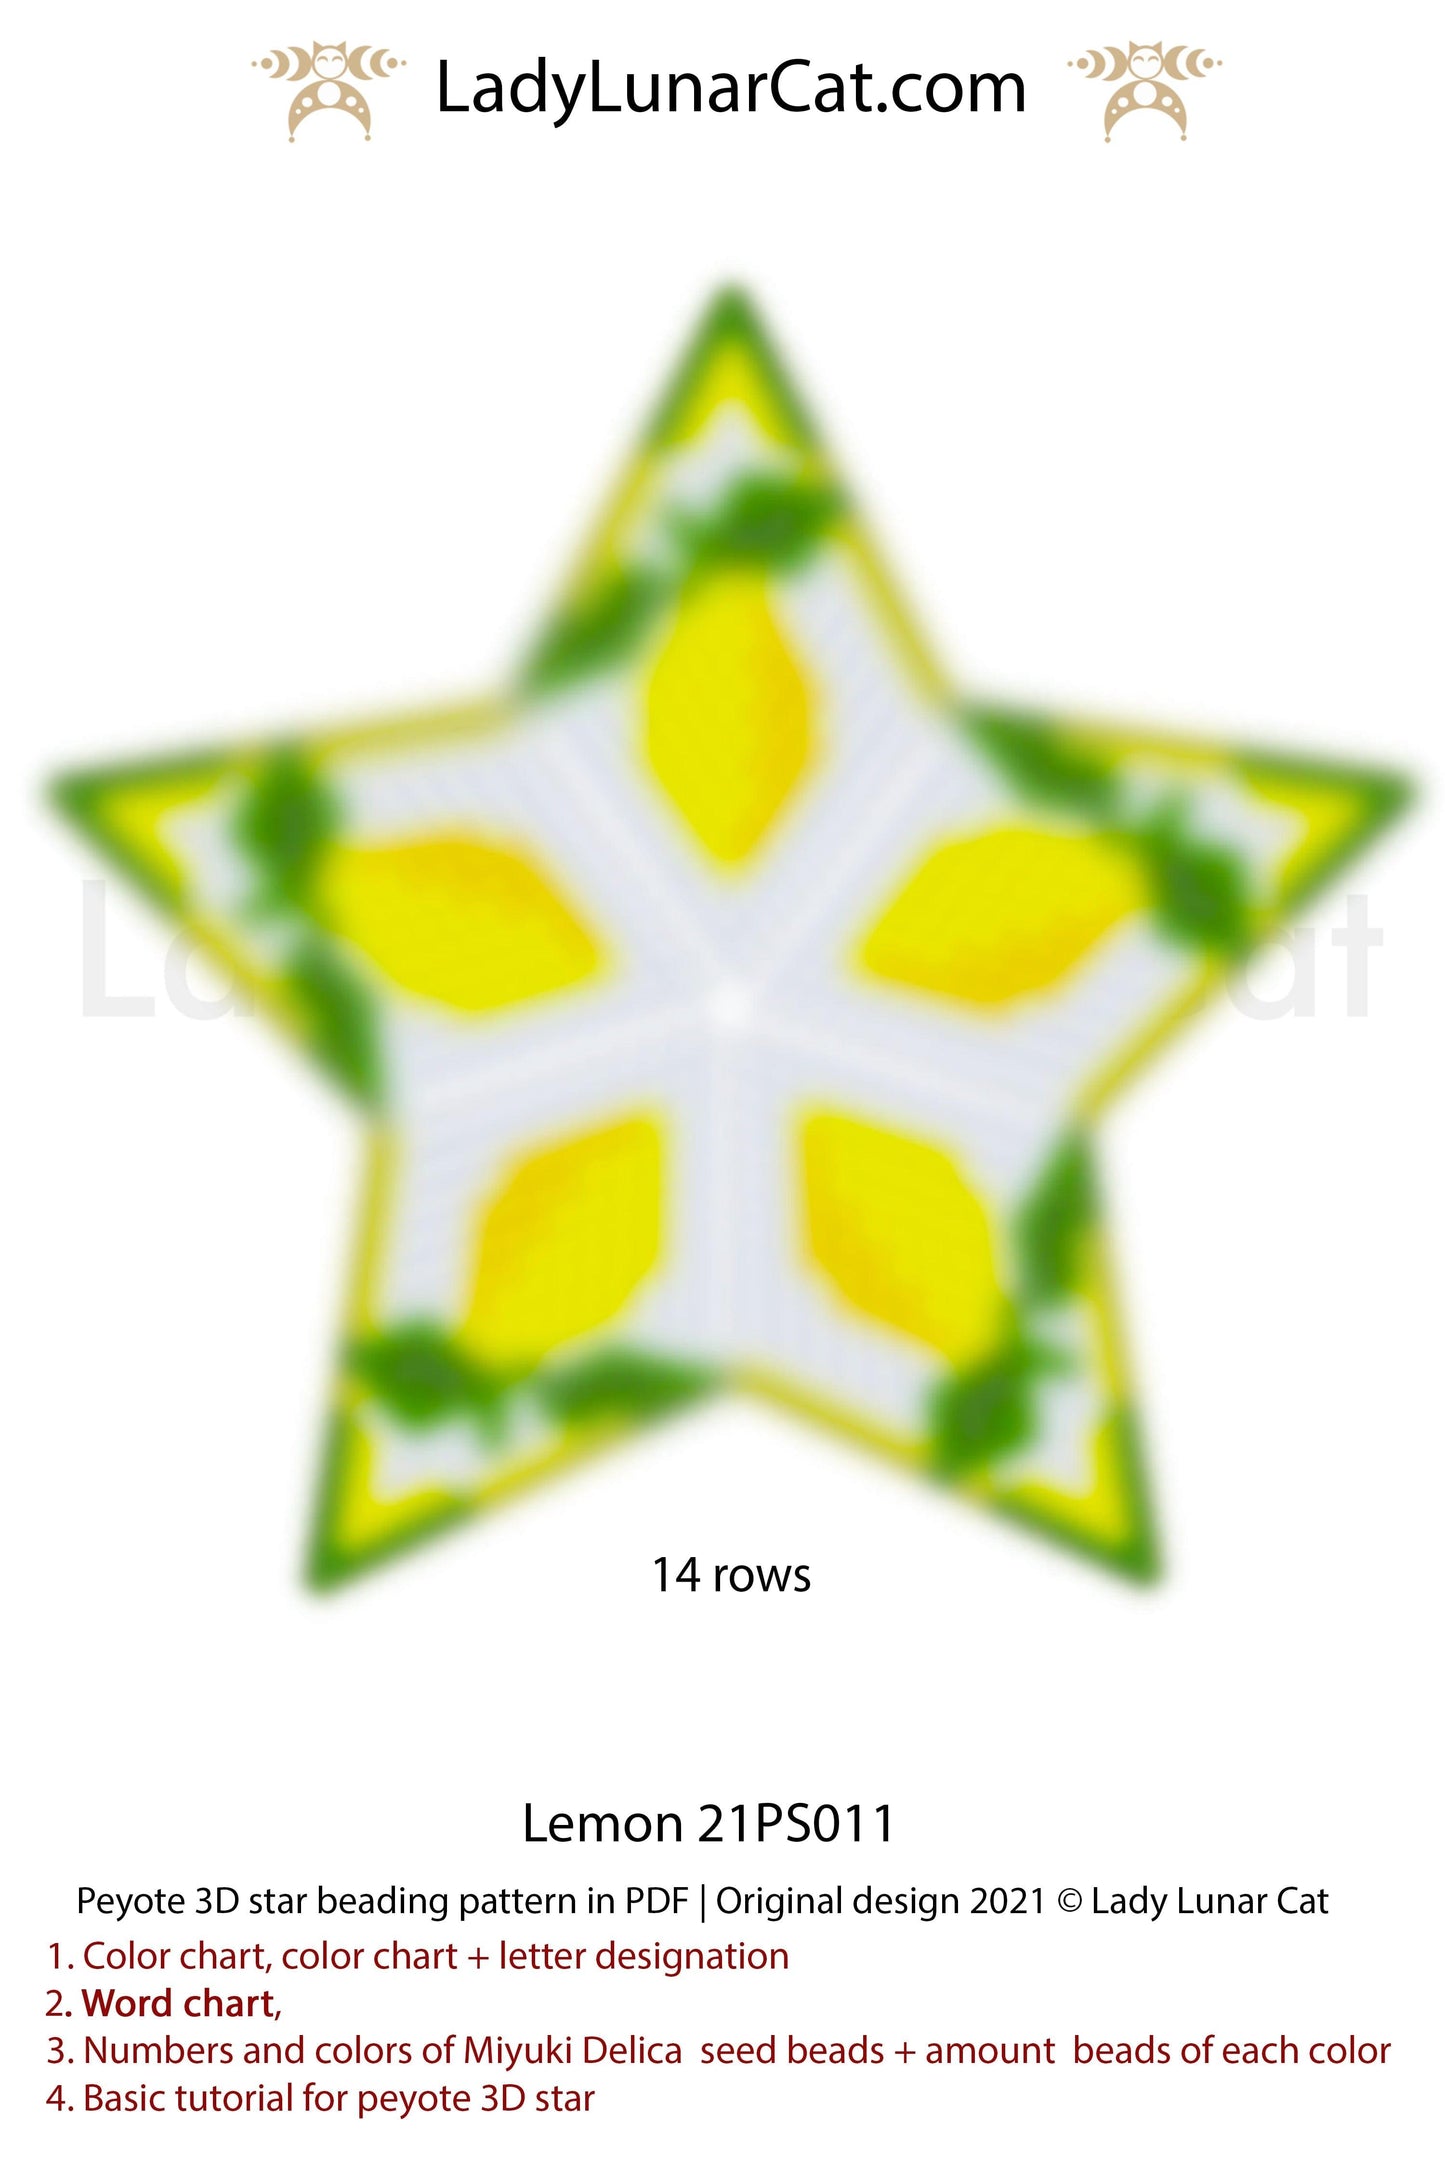 Beaded star pattern - Lemon 21PS011 | Seed beads tutorial for 3D peyote star LadyLunarCat